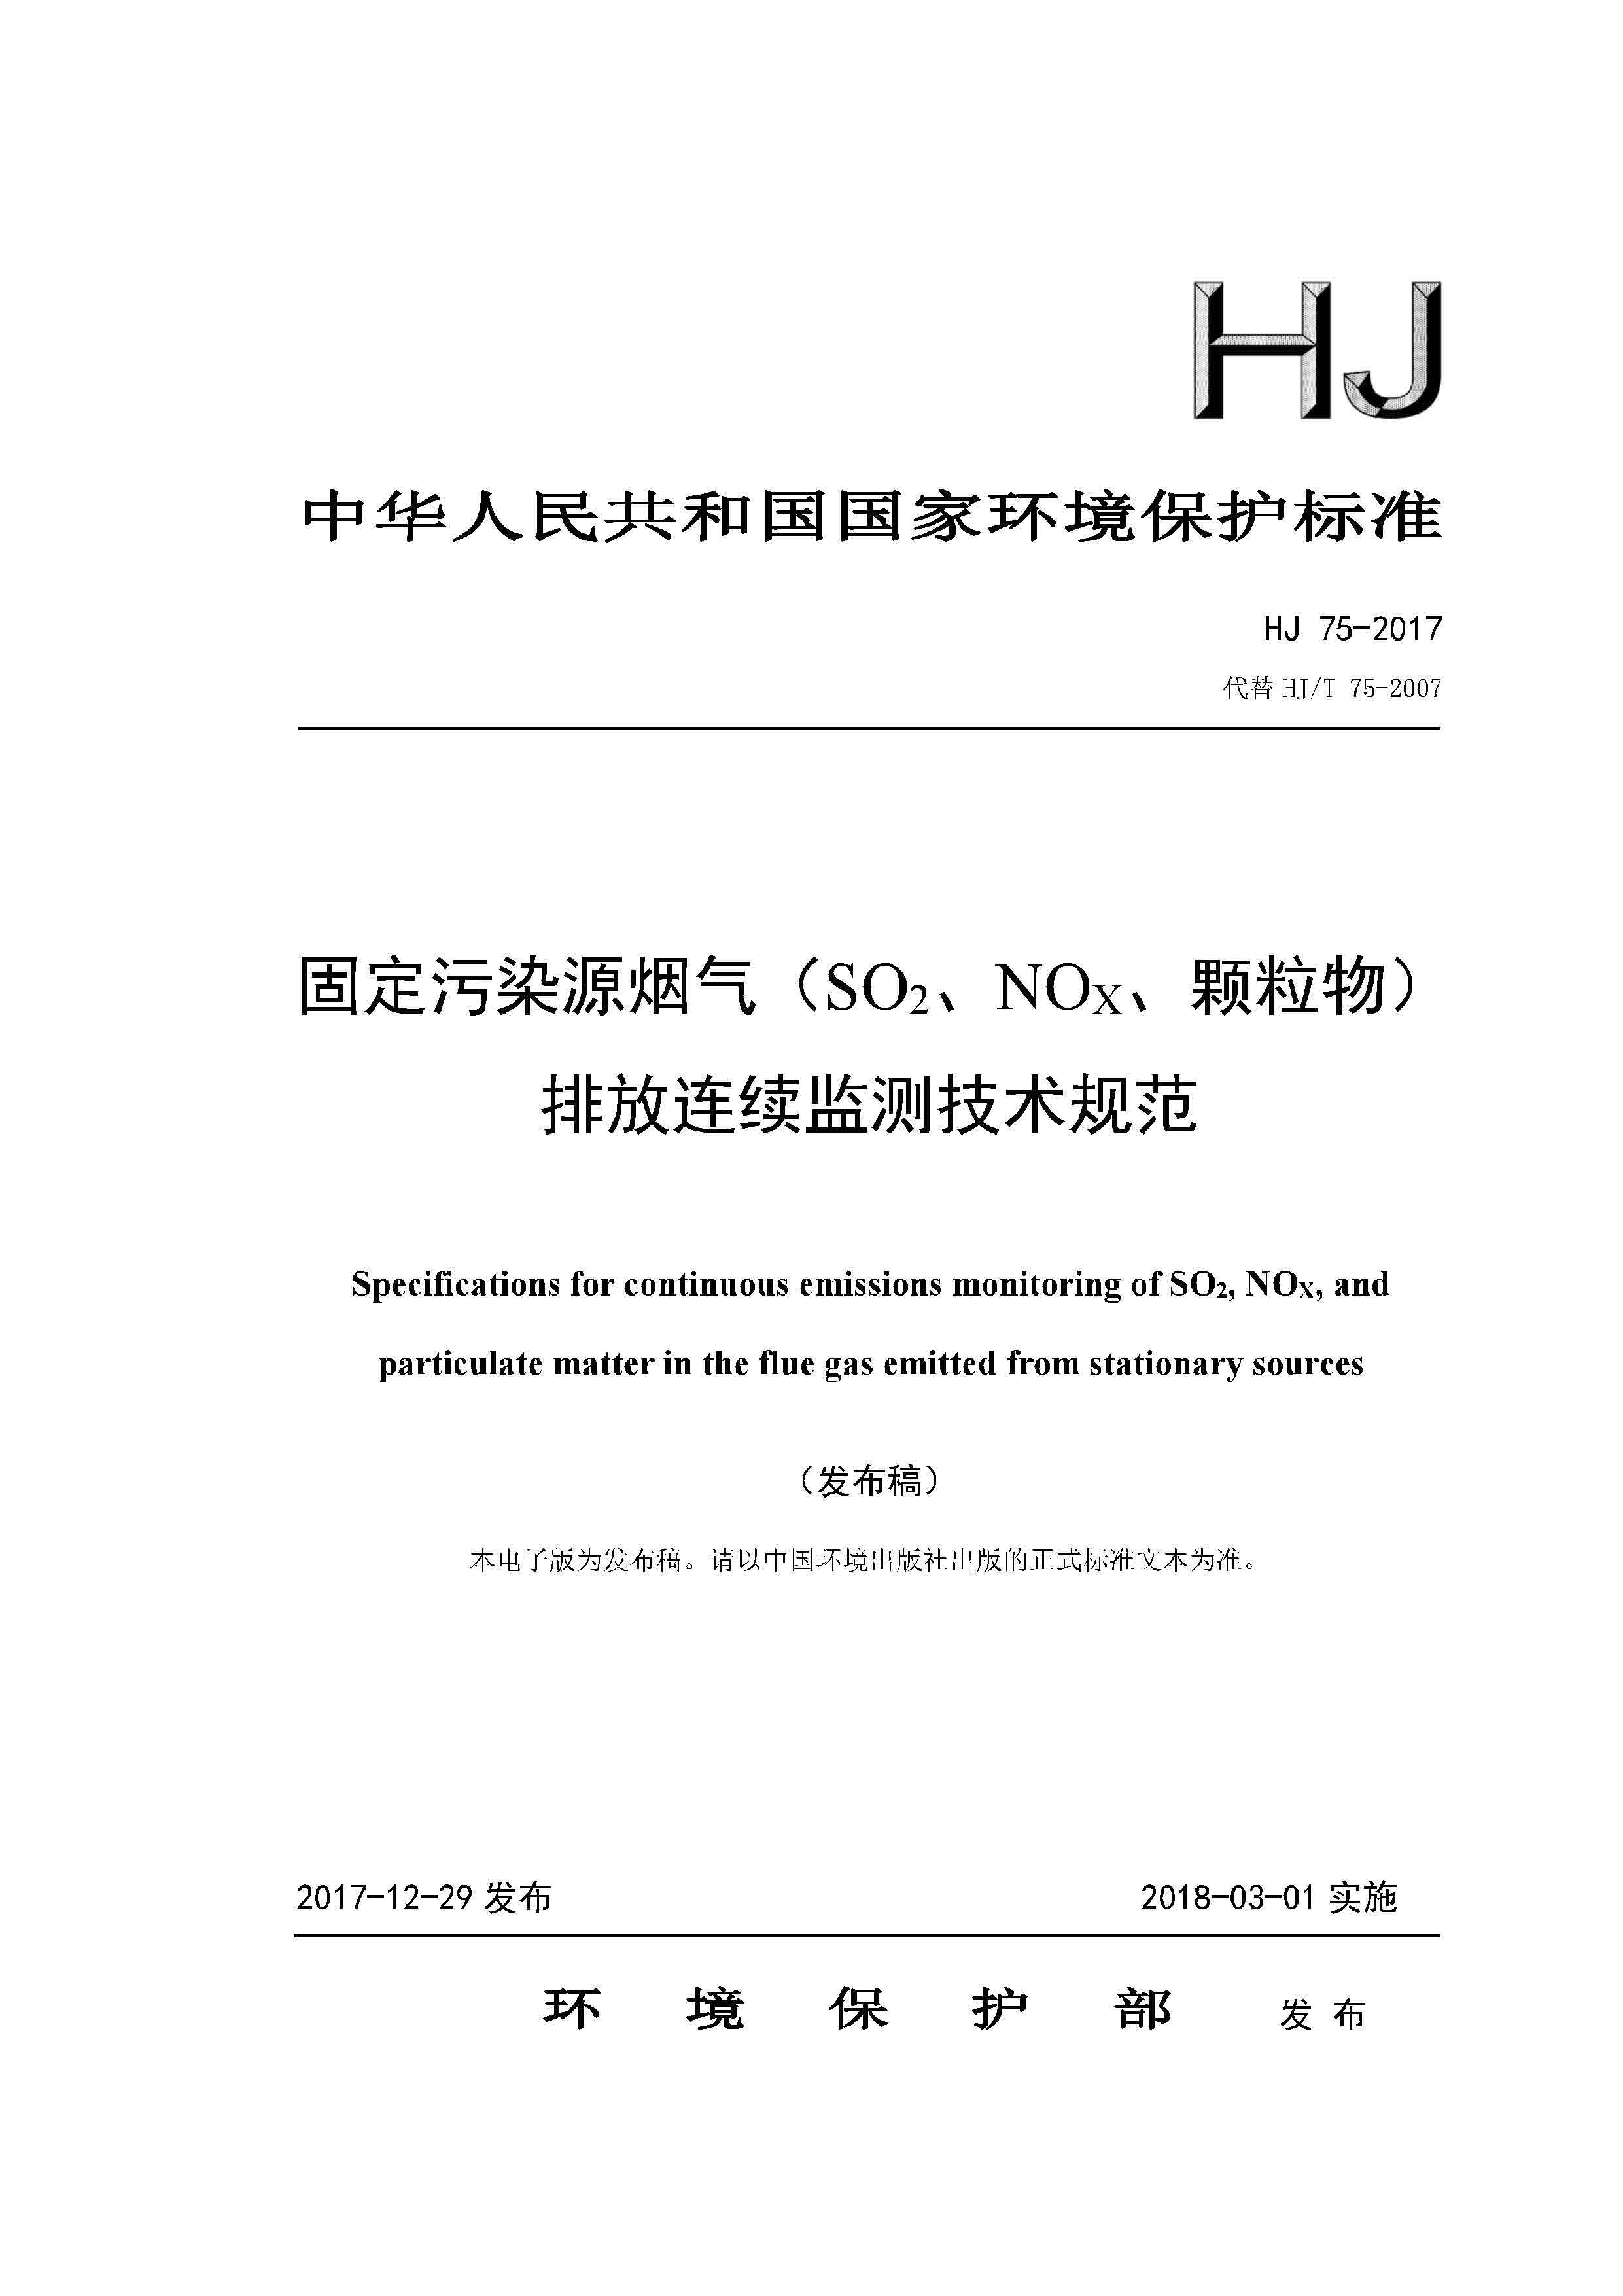 HJ 75-2017 固定污染源烟气（SO2、NOX、颗粒物）排放连续监测技术规范